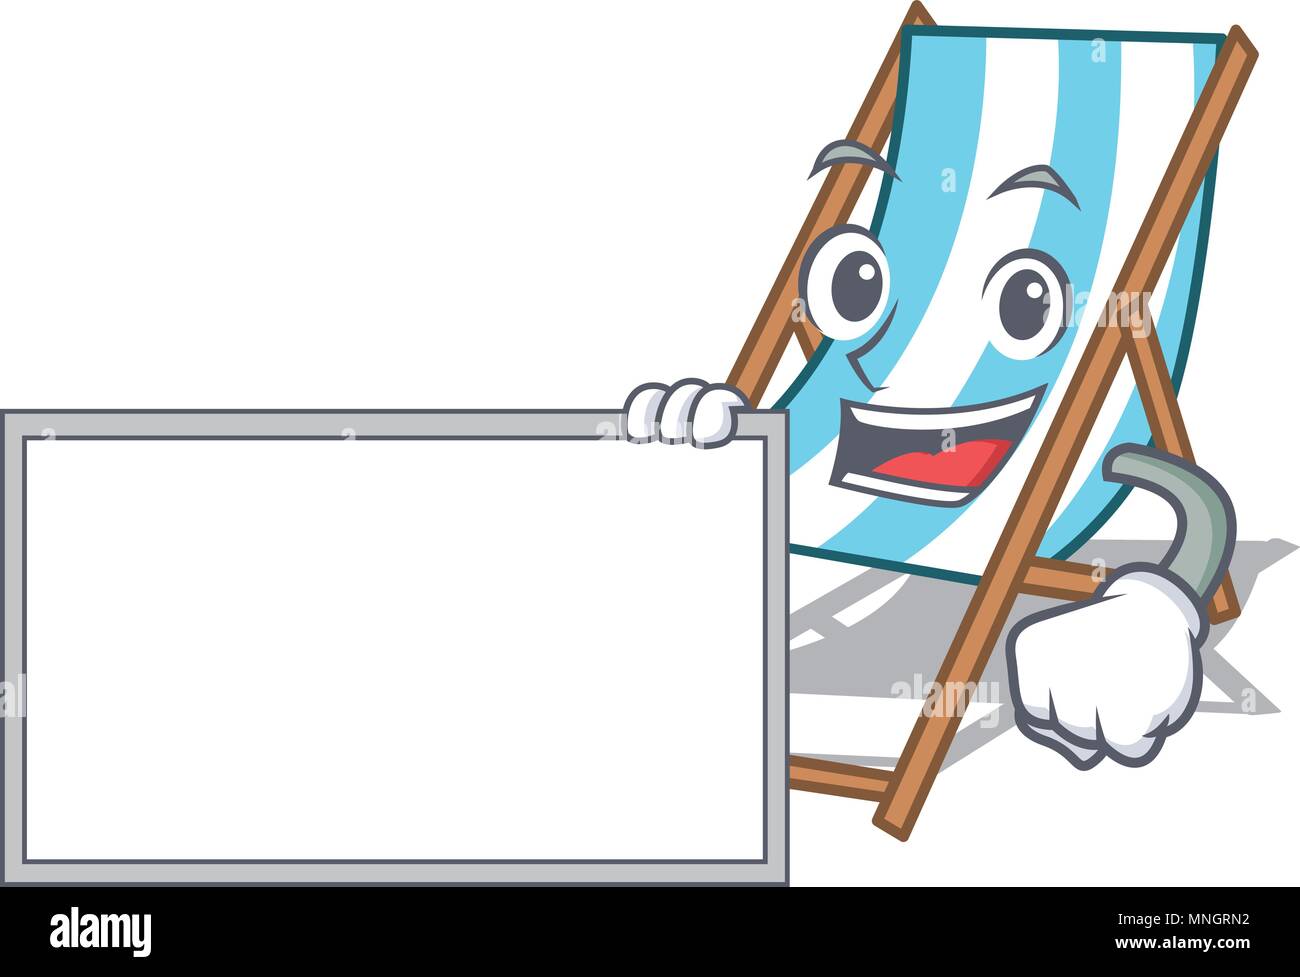 Seaside Cartoon Board Stockfotos Und Bilder Kaufen Alamy